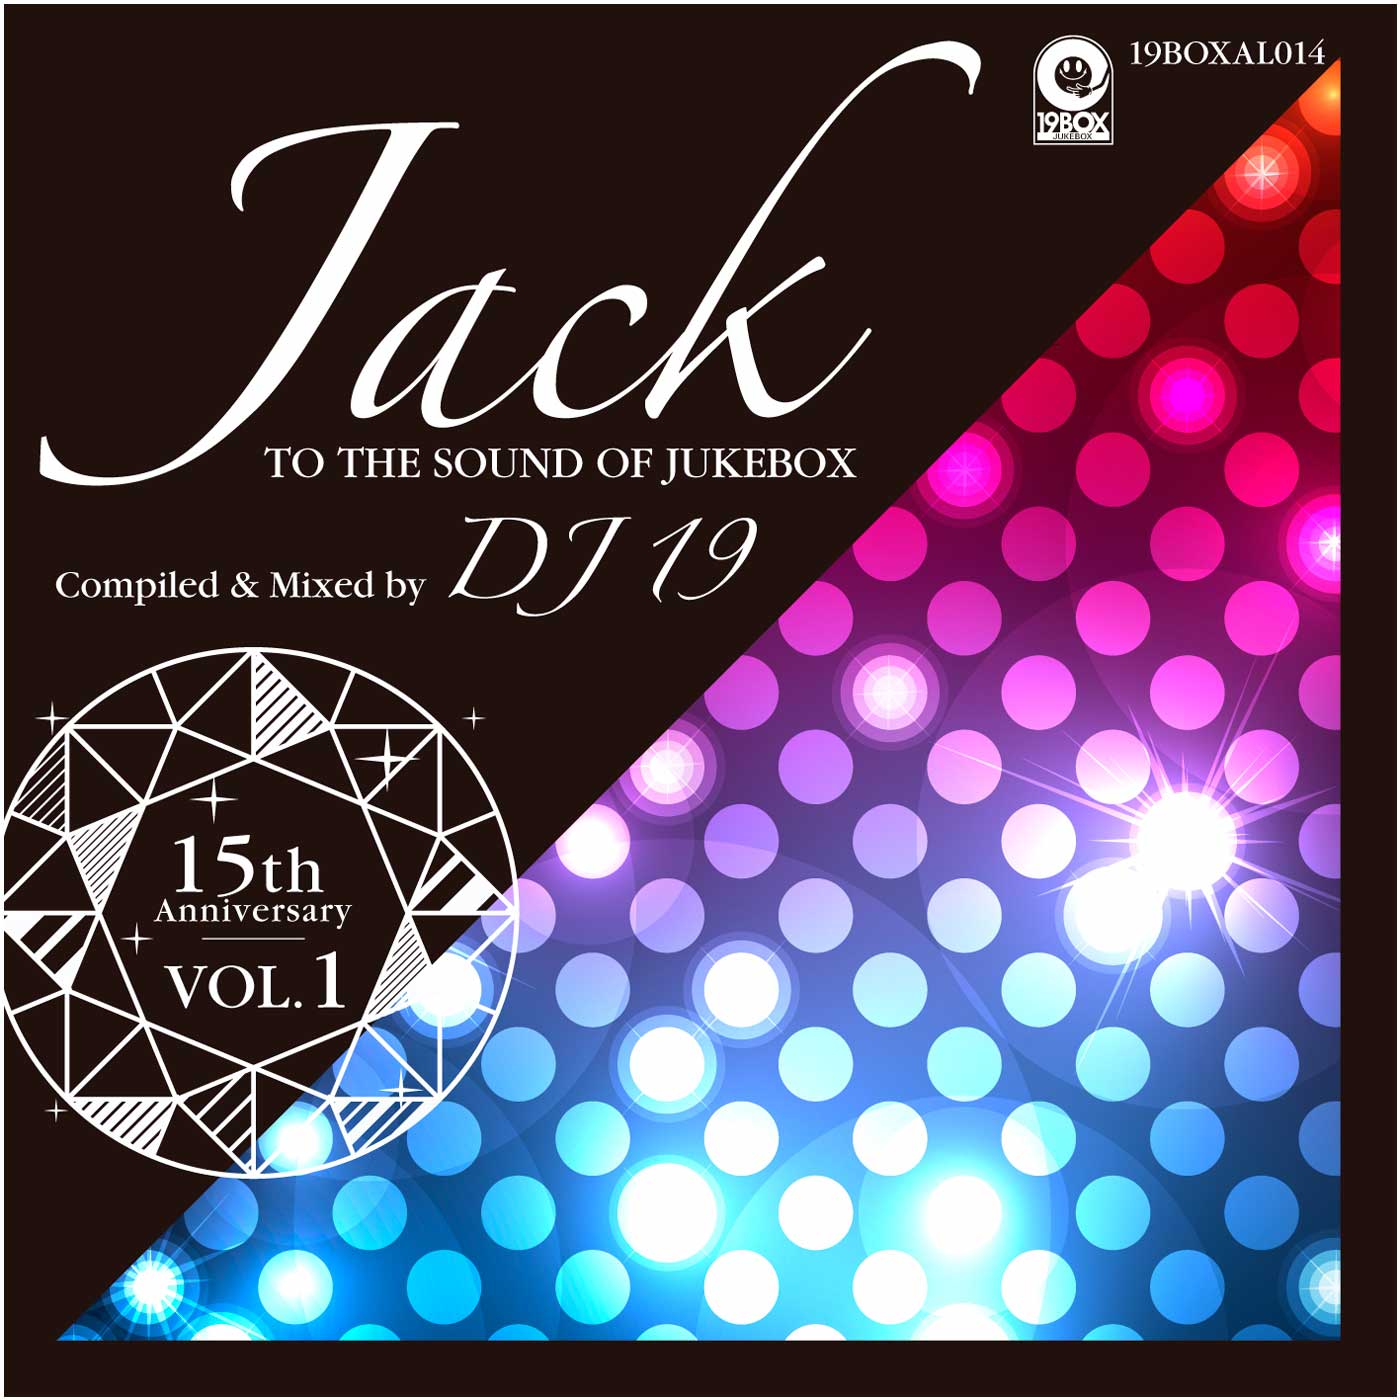 曲名JACK TO THE SOUND OF JUKEBOXのアートワーク